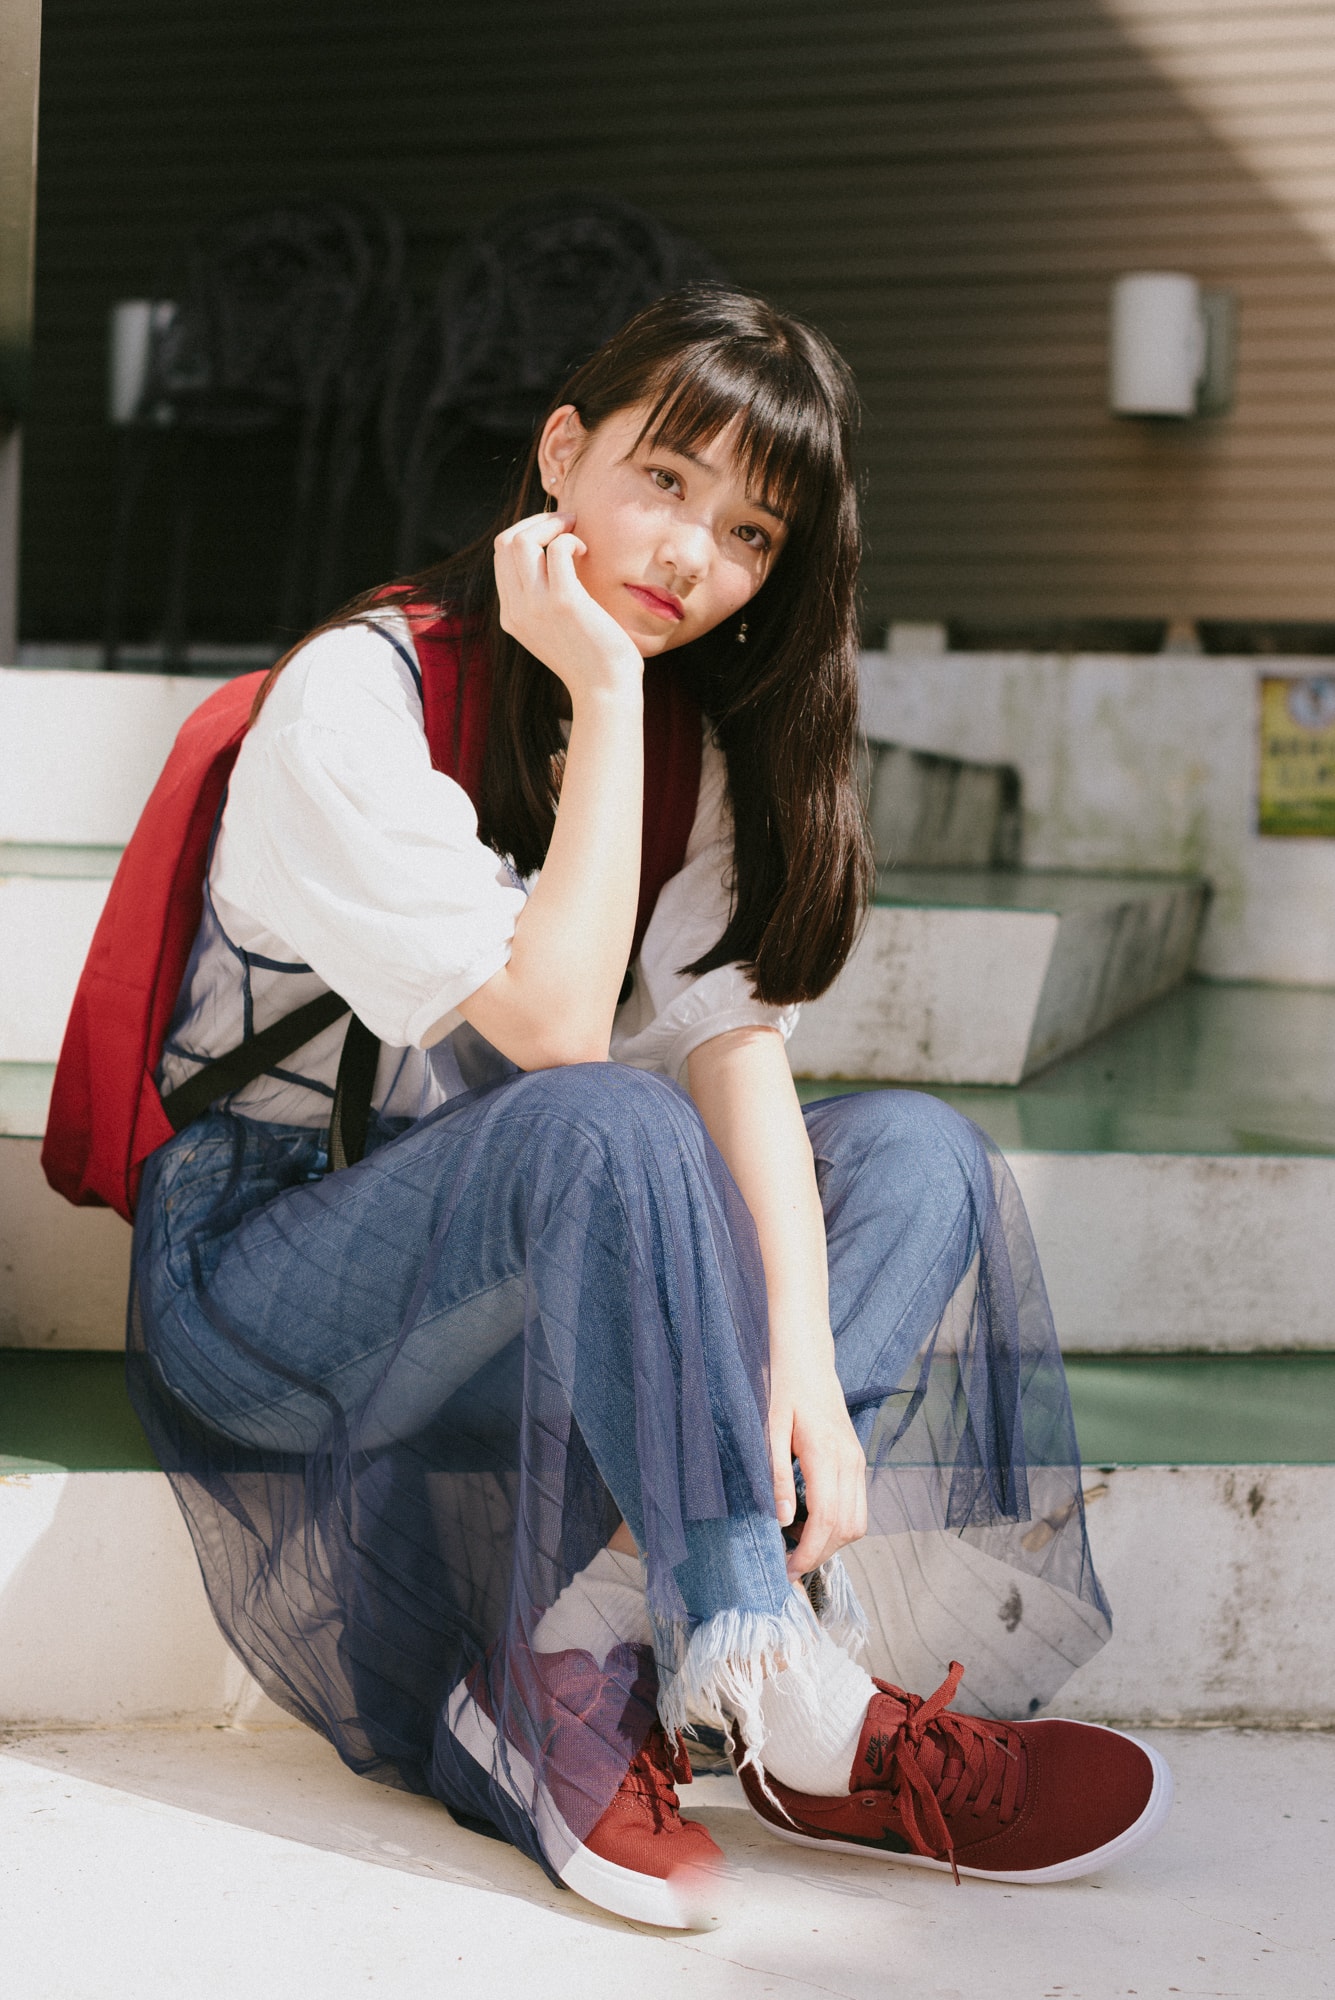 女子高生の最新ファッショントレンドをチェック モデル 佐久間乃愛ちゃんによる街頭インタビューレポート